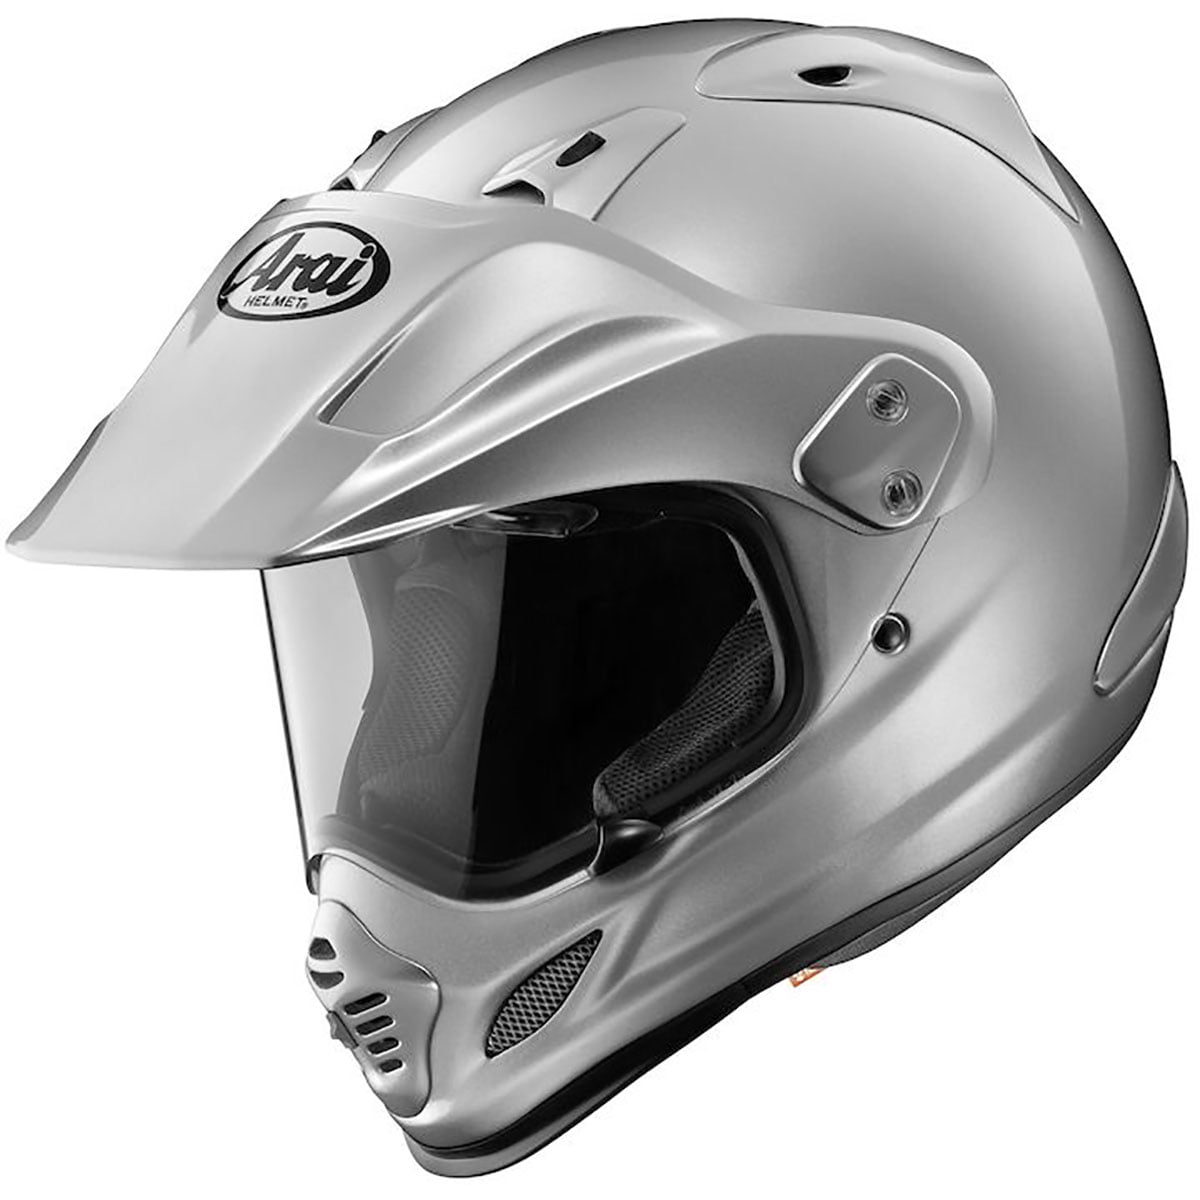 Arai Helmets Astral SZ/m SZ/c Classic/m Classic/c Rear Vents Set Blem FF3 